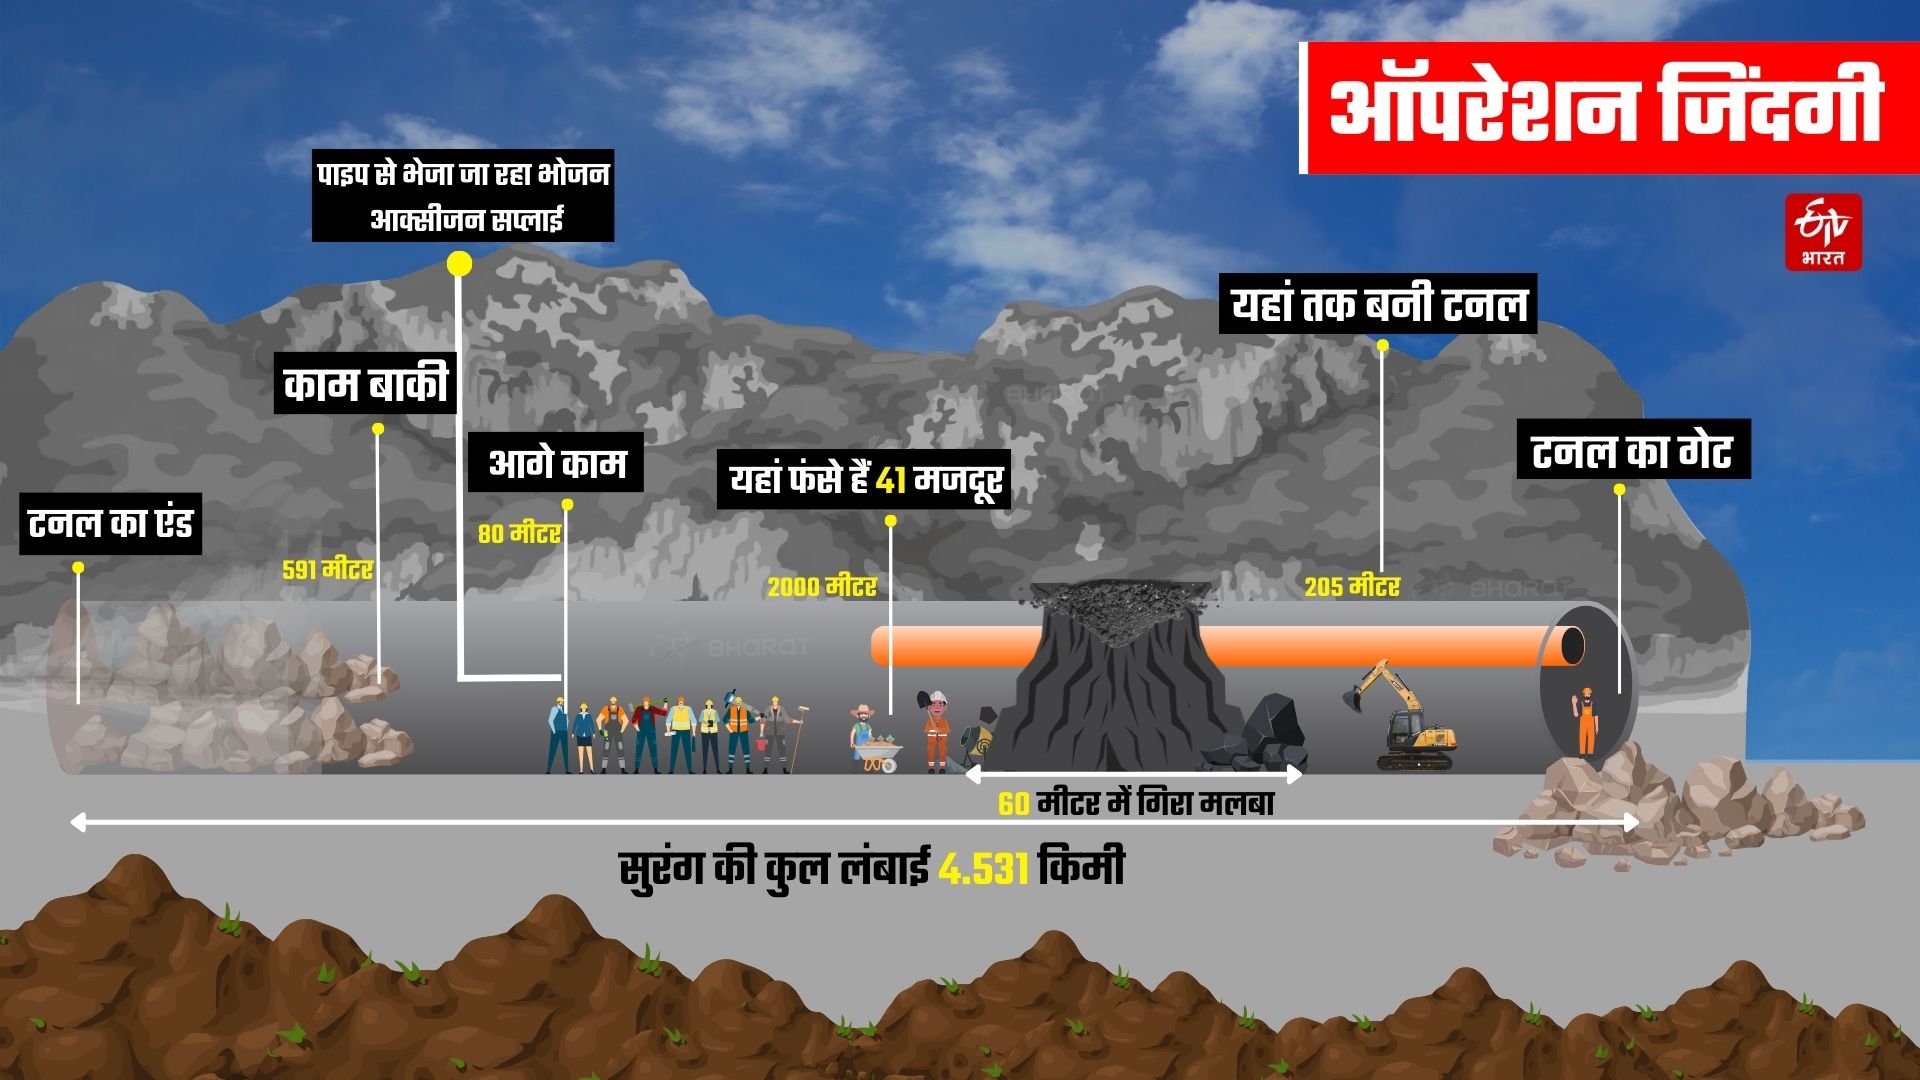 Uttarakhand Tunnel Collapse Updates